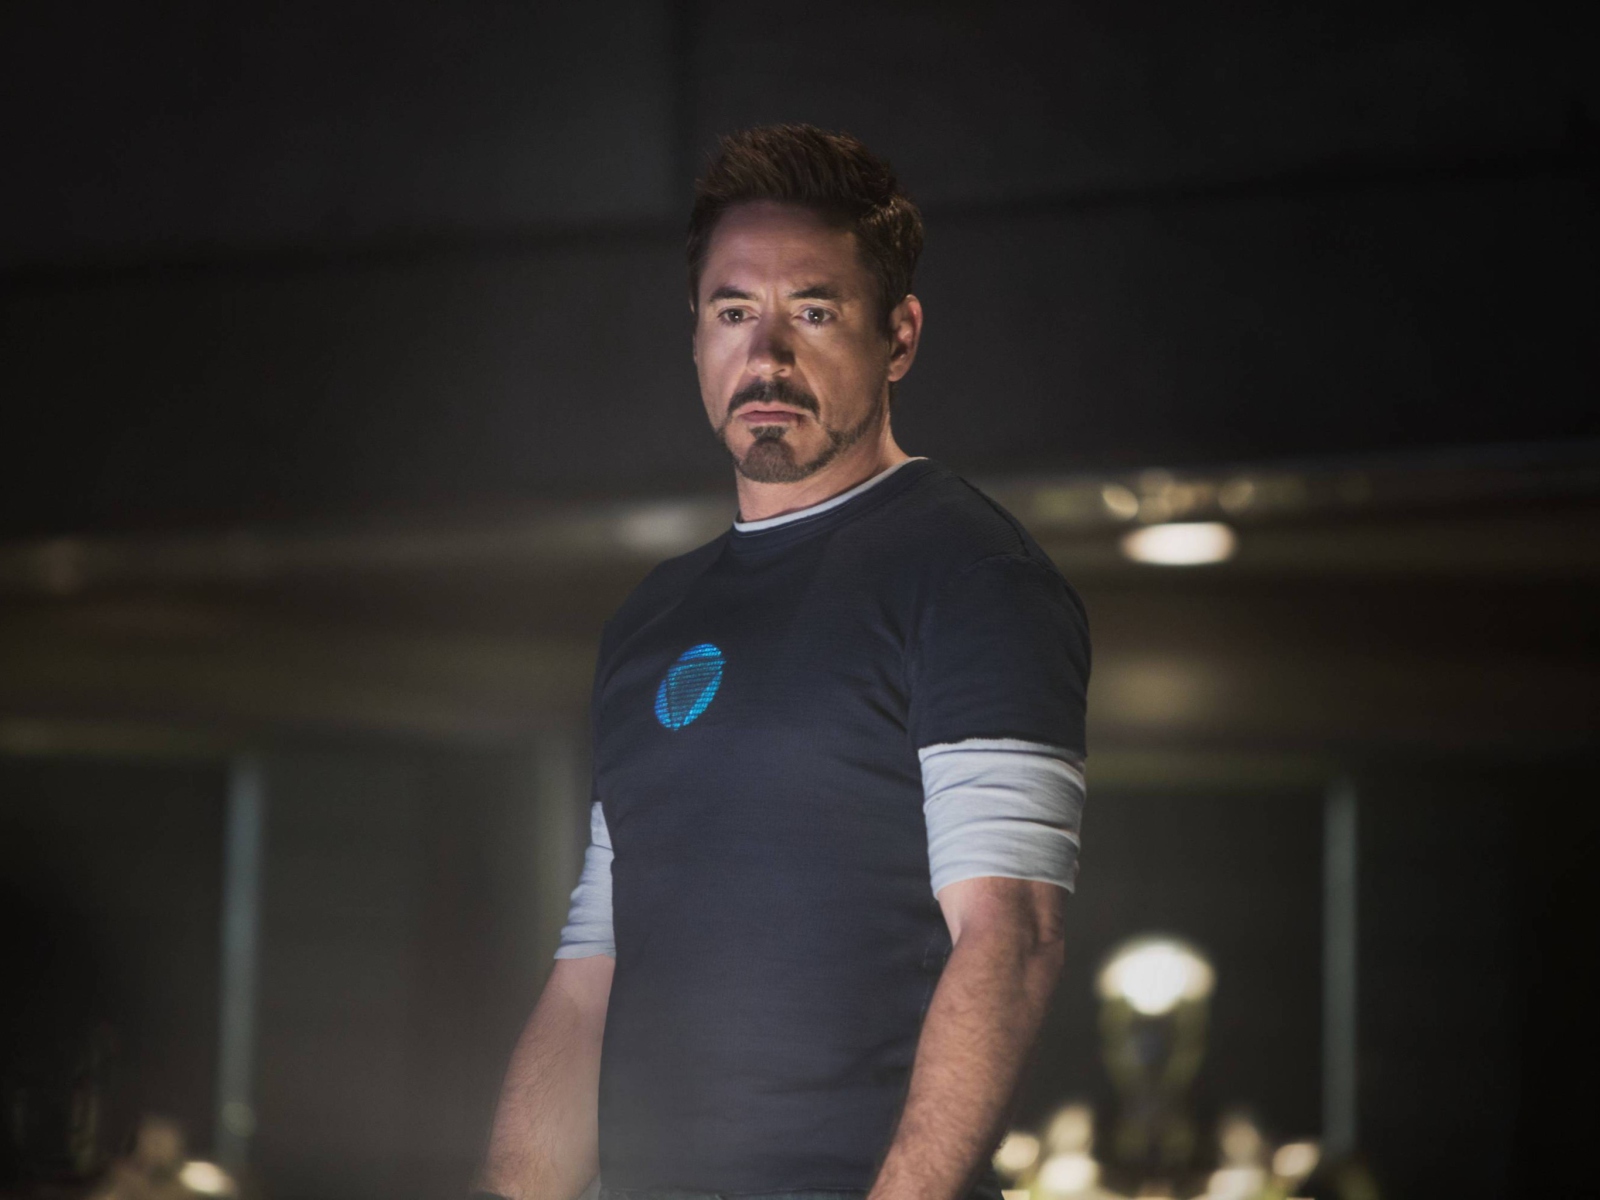 Robert Downey Jr As Iron Man 3 wallpaper 1600x1200